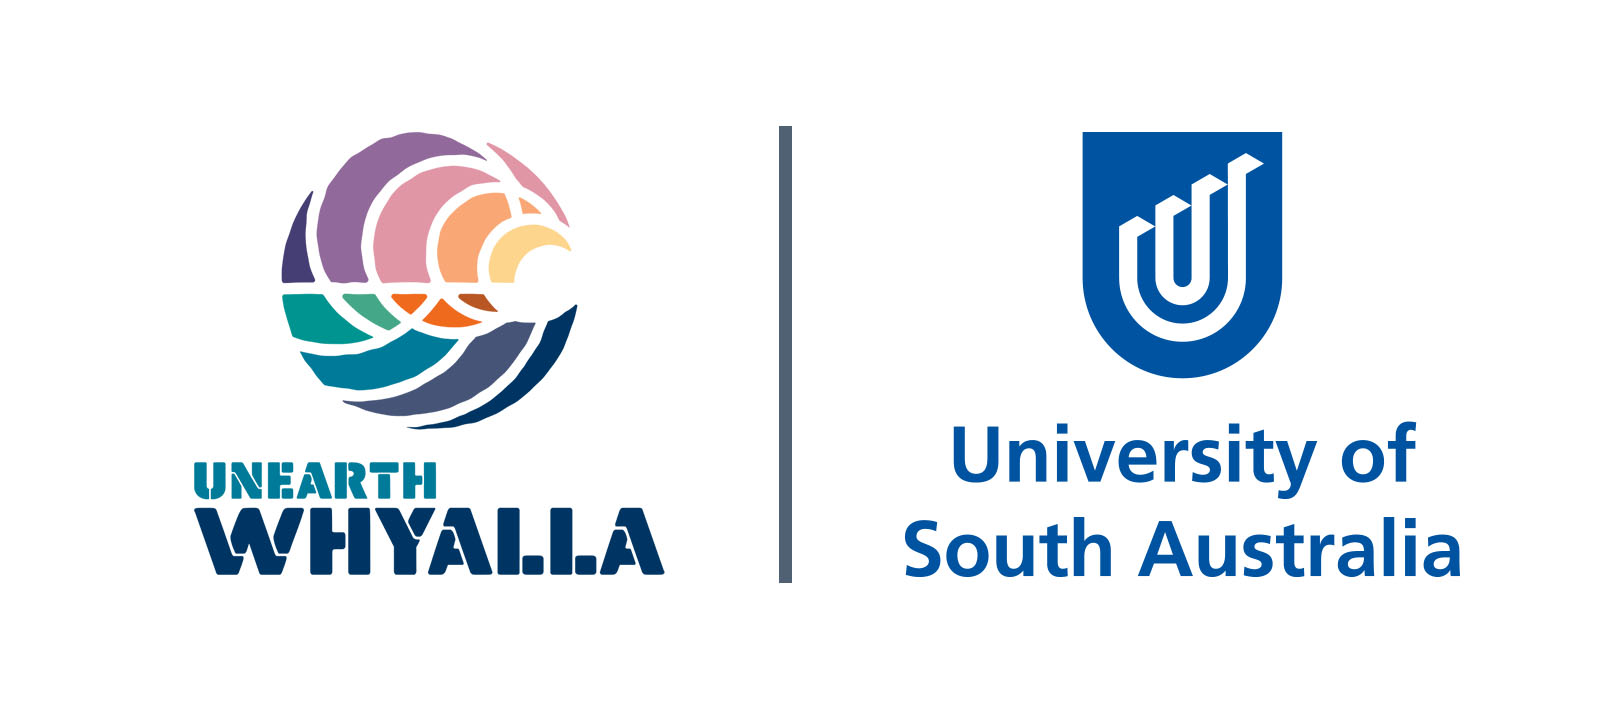 council and uni sa logos